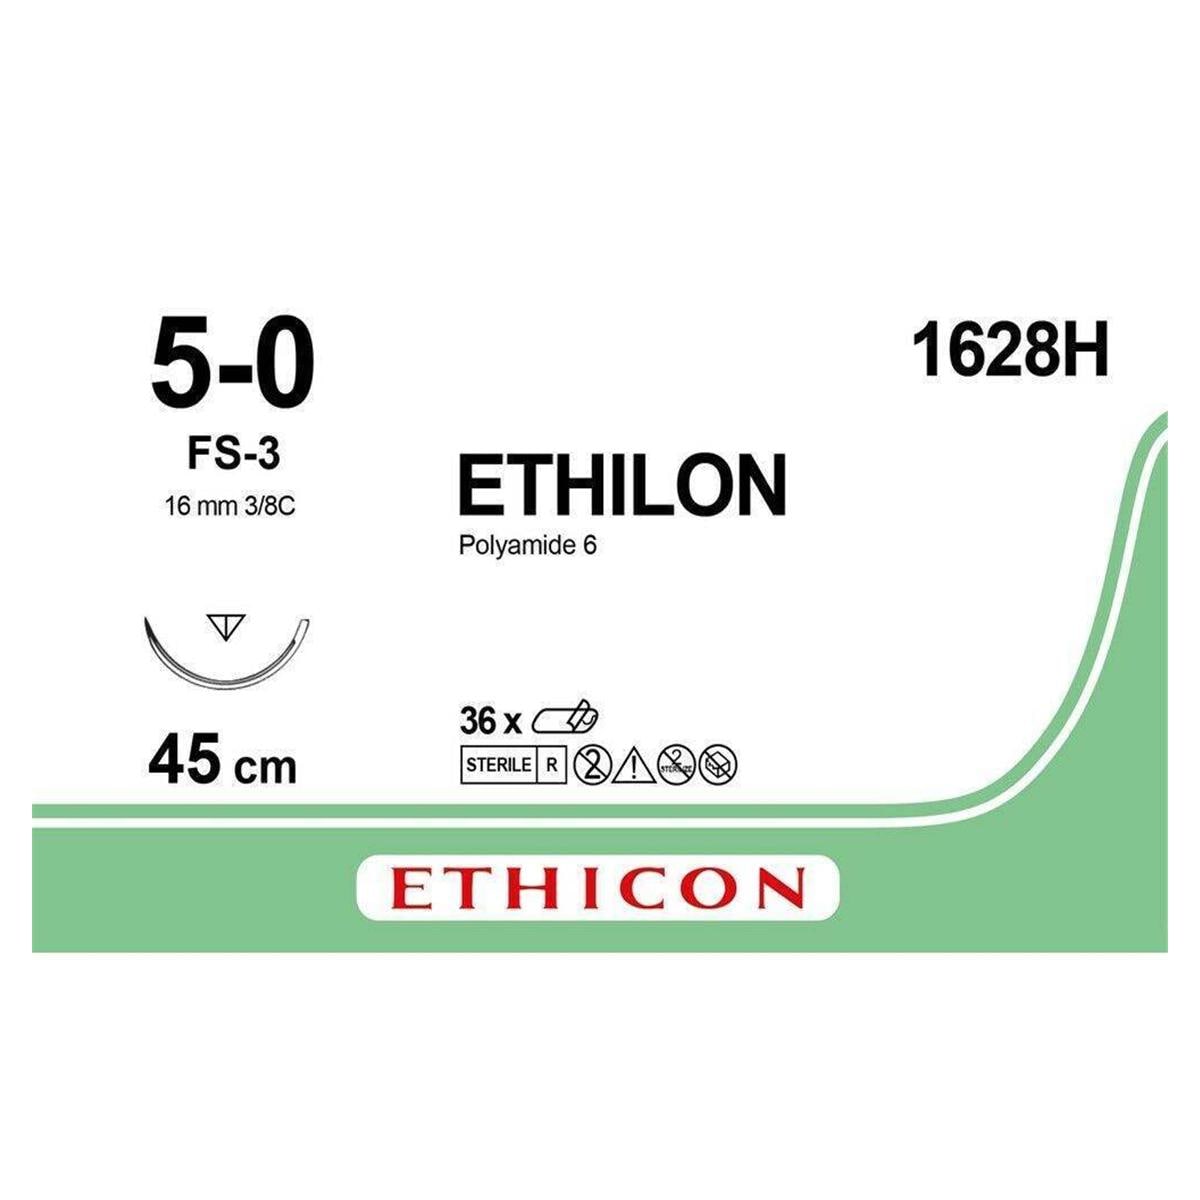 ETHILON schwarz, monofil - Nadeltyp FS3 - USP 5-0, Länge 0,45 m (1628H), Packung 36 Stück